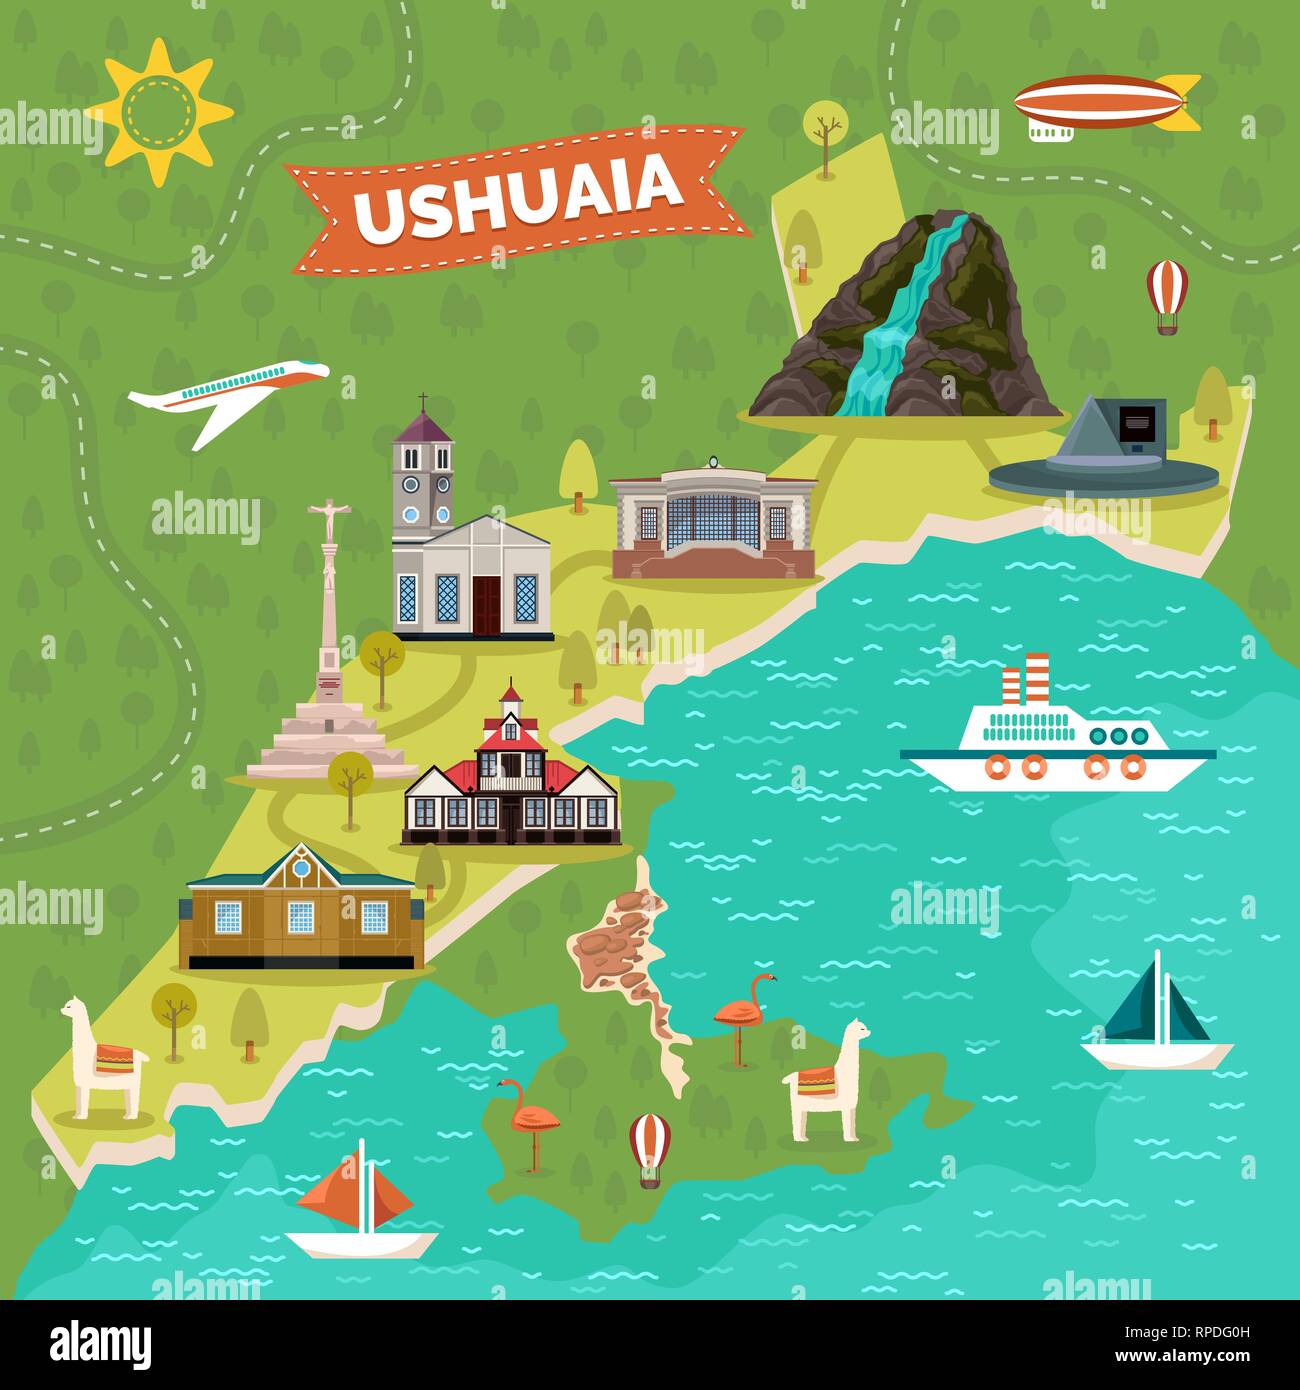 Ushuaia mappa della città con luoghi, landmark pubblicità Illustrazione Vettoriale